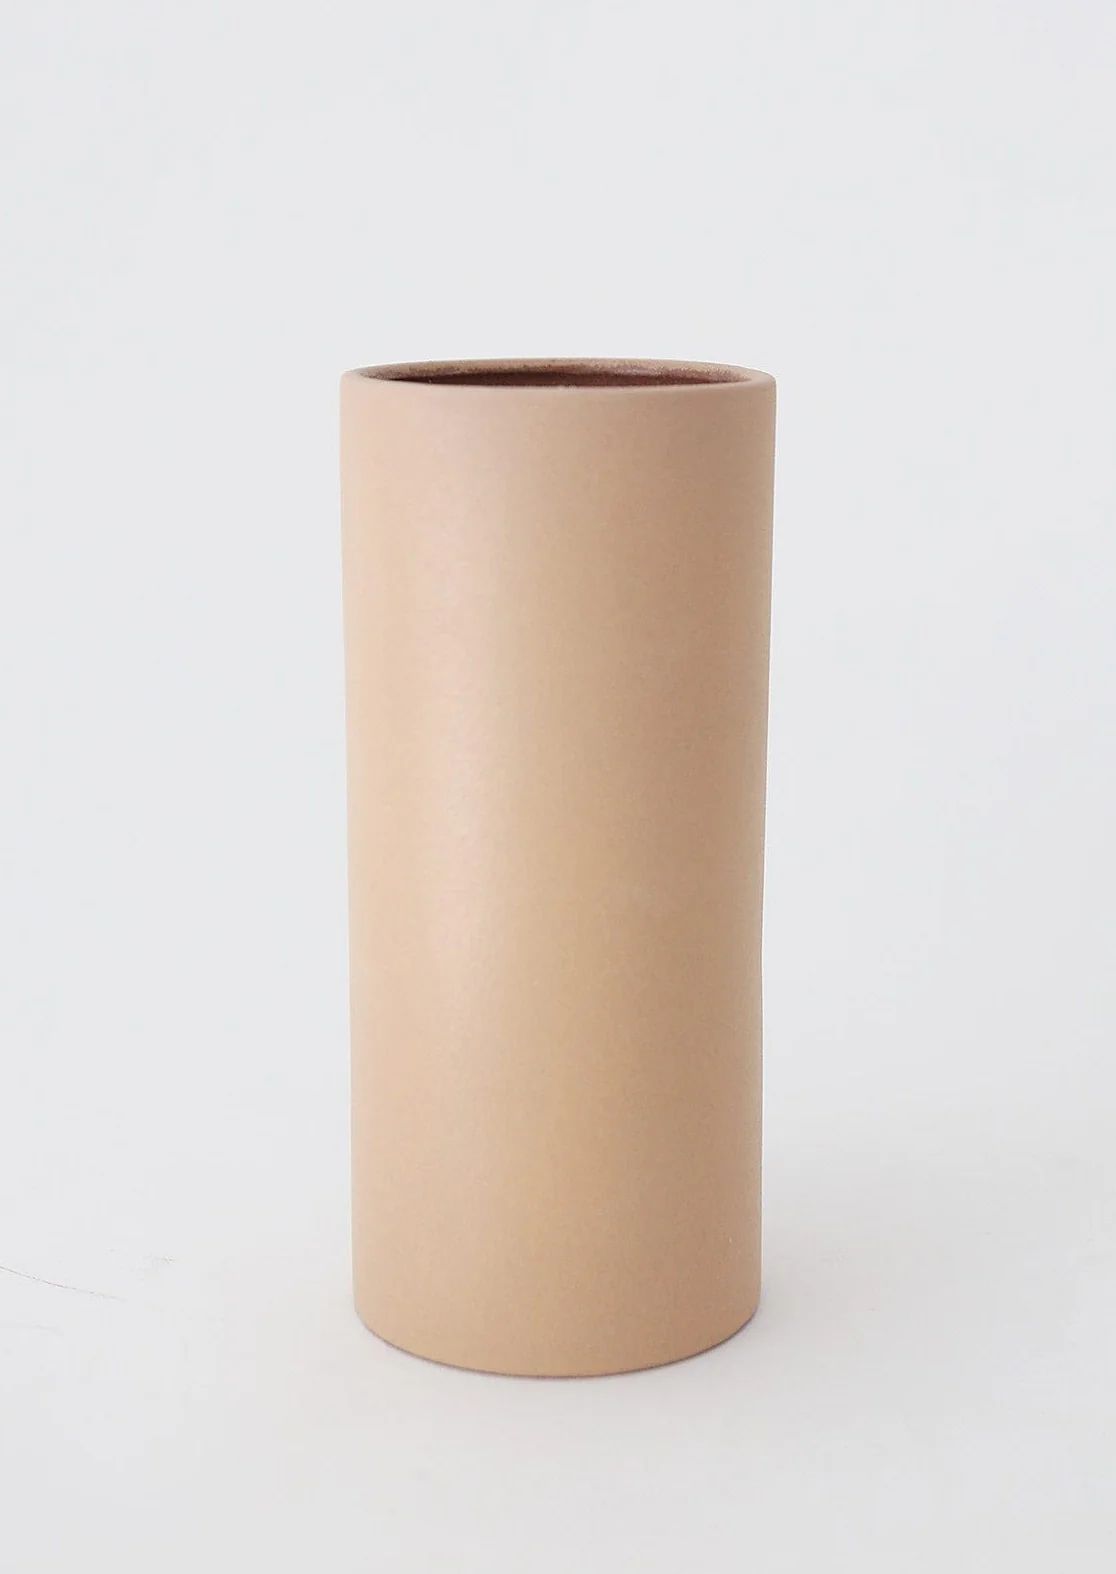 Terra Cotta Cylinder Vase in Sand | Home Decor Vases at Afloral.com | Afloral